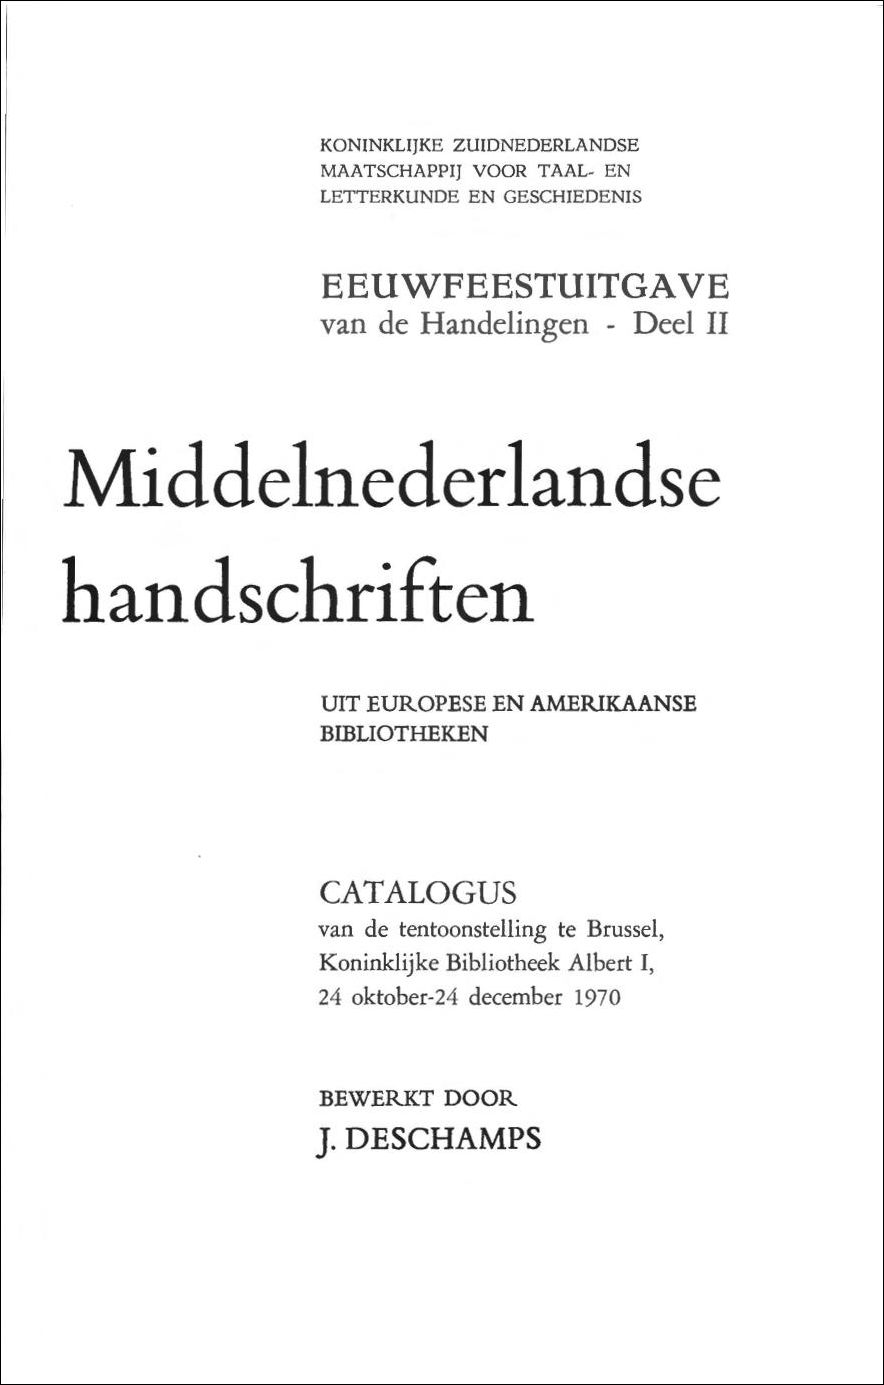 Volume 24 • Nummer 2 • 1970 • Eeuwfeestuitgave: Middelnederlandse handschriften uit Europese en Amerikaanse bibliotheken